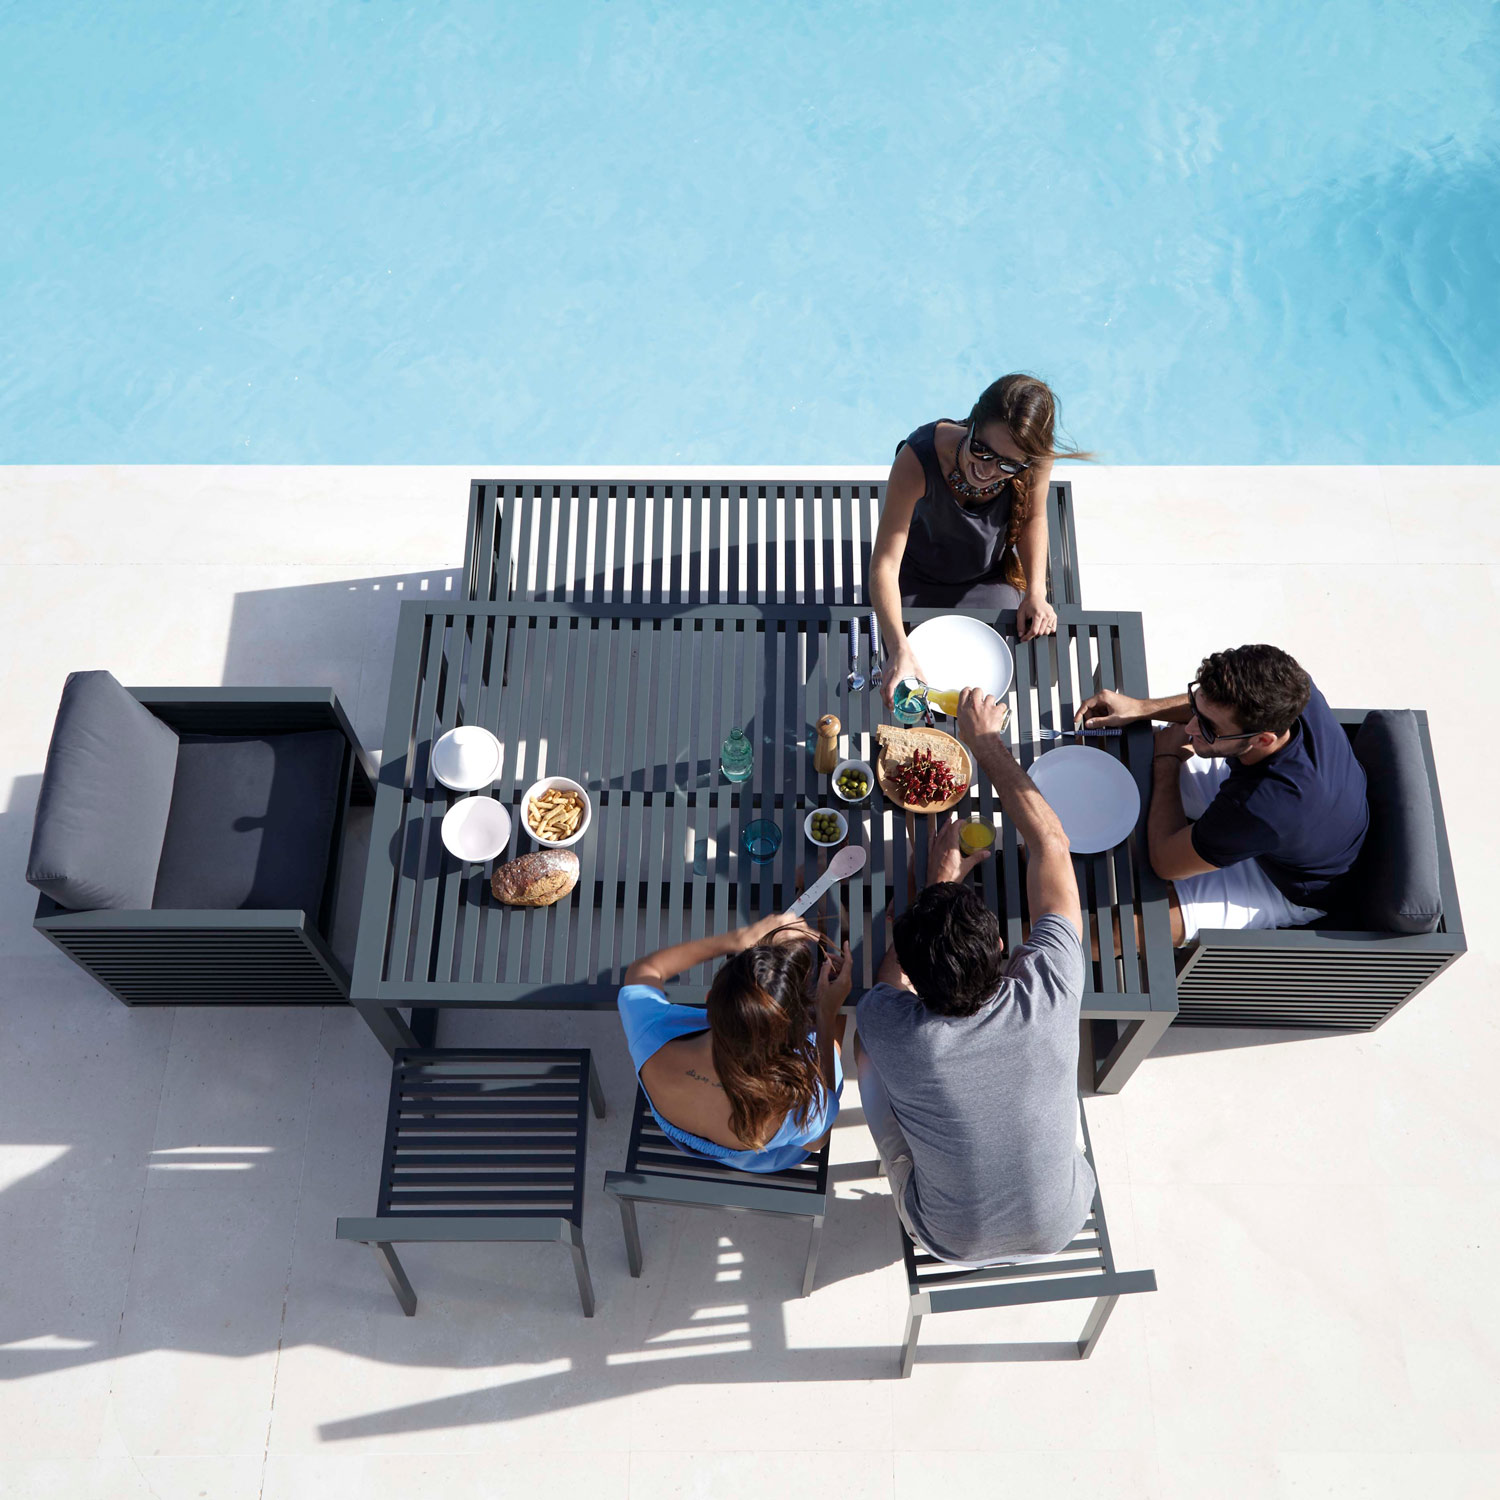 DNA luksuriøse møbler og middag ved poolen ved spisebord og stole fra Gitz Design og Gandia Blasco